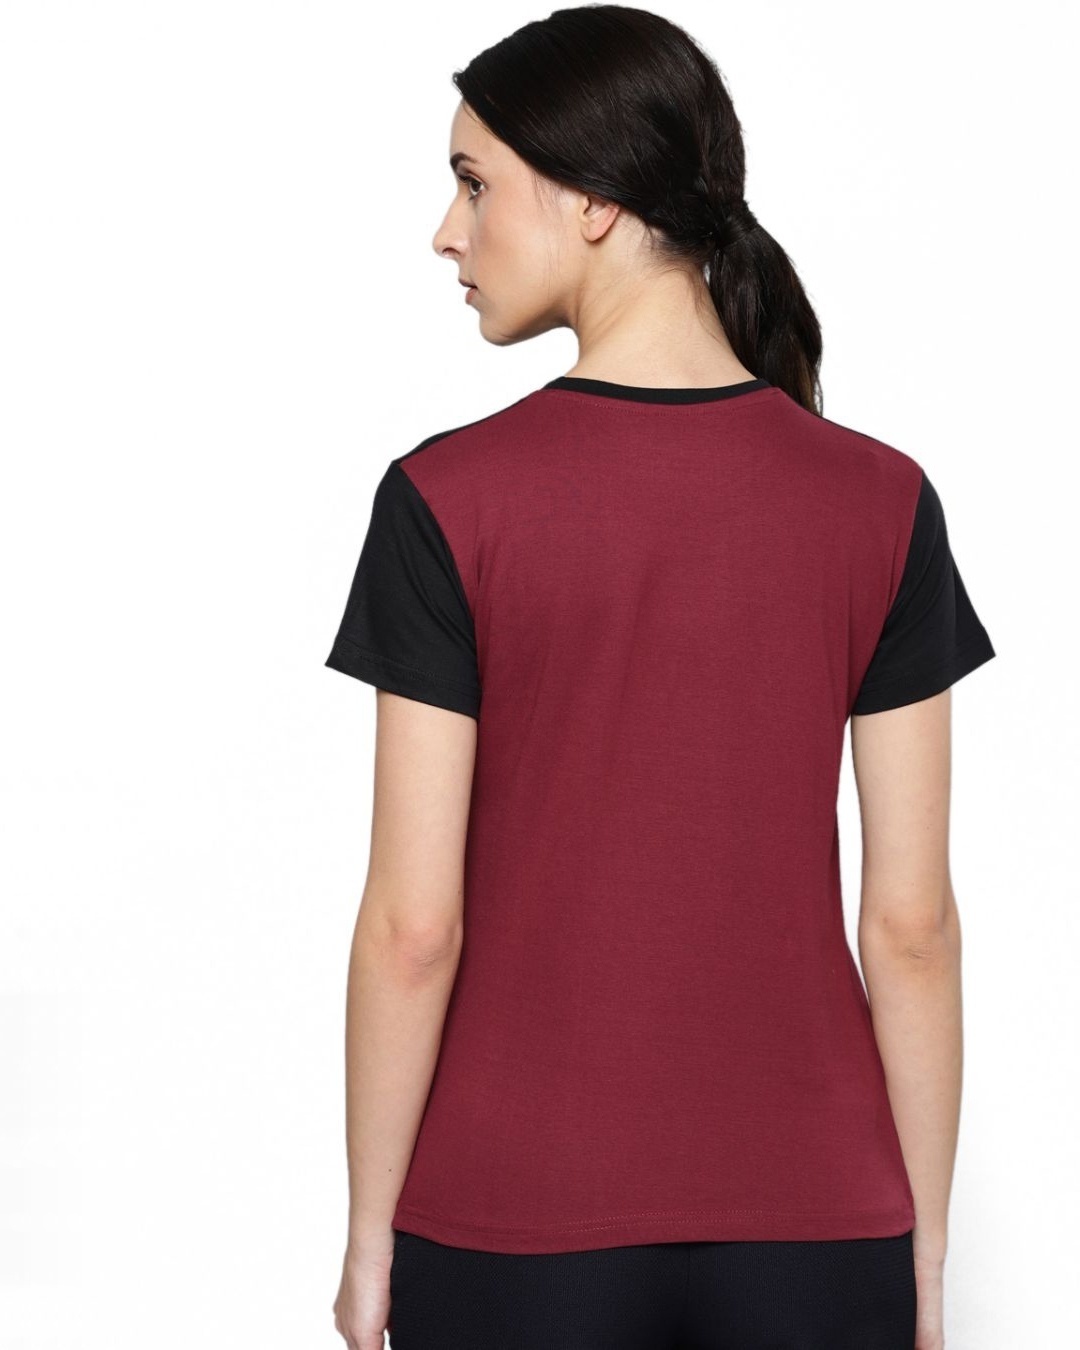 Shop Women's Black & White Colourblocked T-shirt-Back